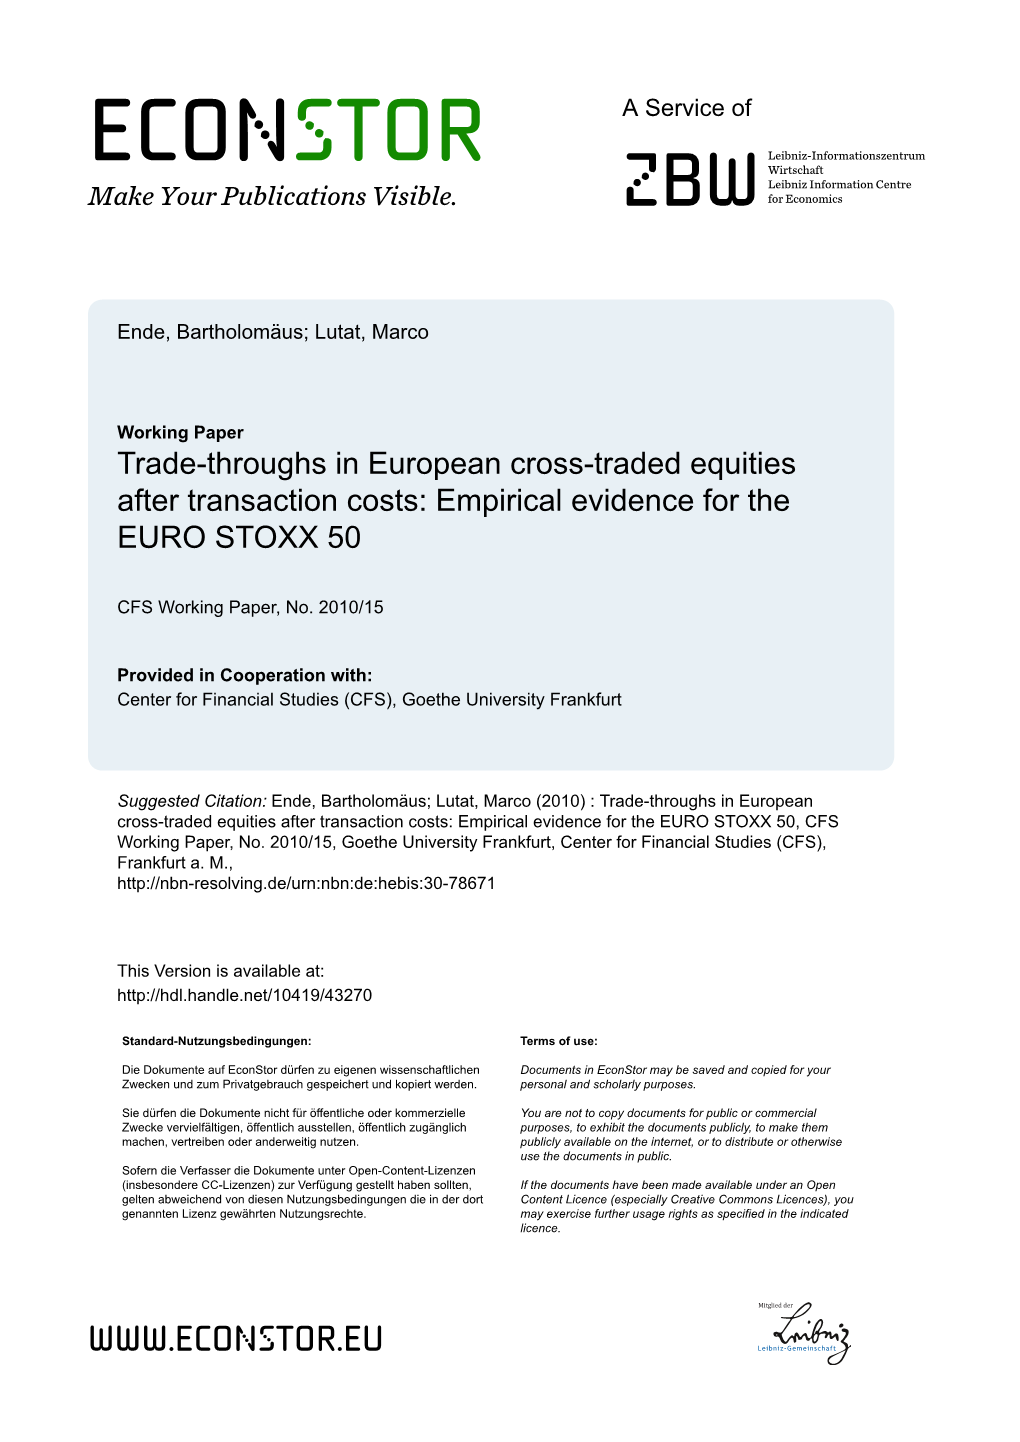 Empirical Evidence for the EURO STOXX 50